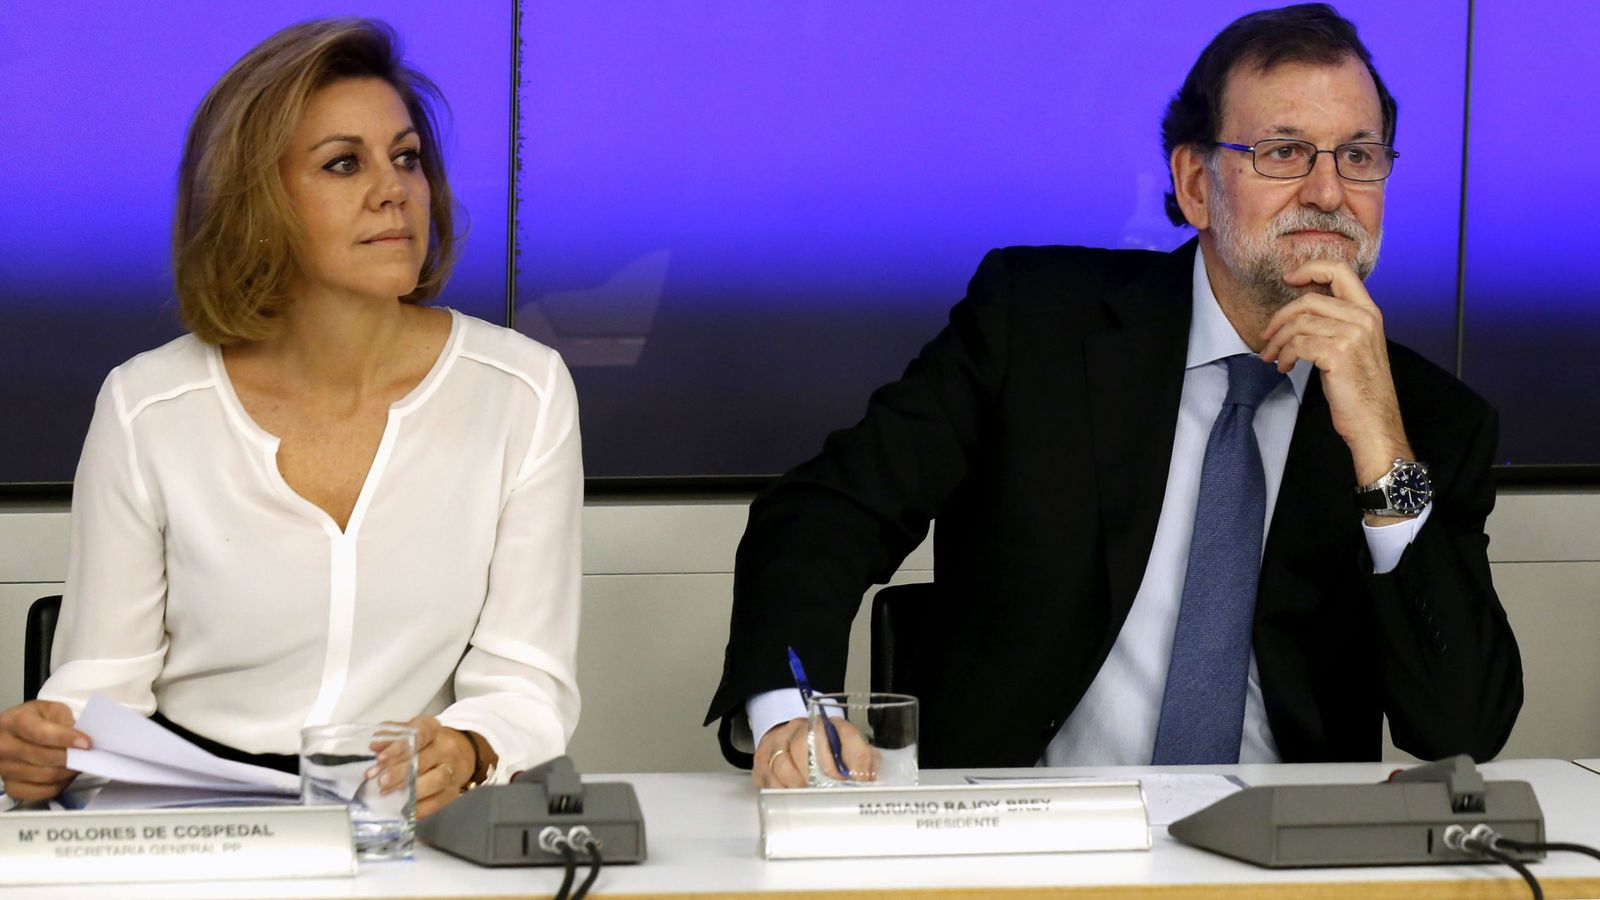 Foto: Rajoy y Cospedal pactaron la dimisión de Soria y la vicepresidenta se libra del 'marrón' (Efe)